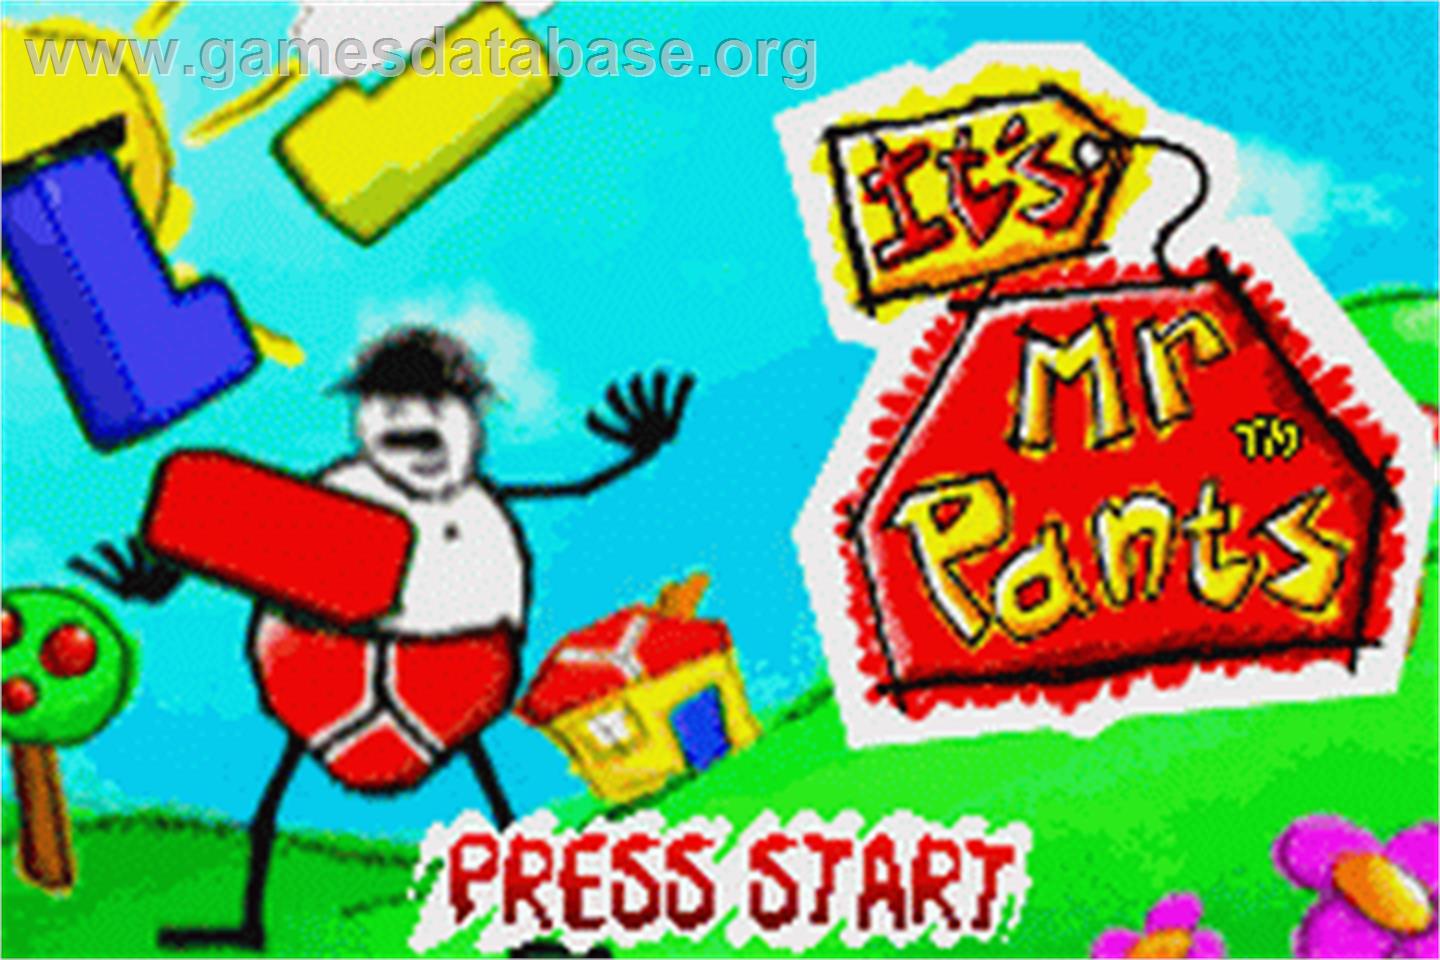 It's Mr. Pants - Nintendo Game Boy Advance - Artwork - Title Screen